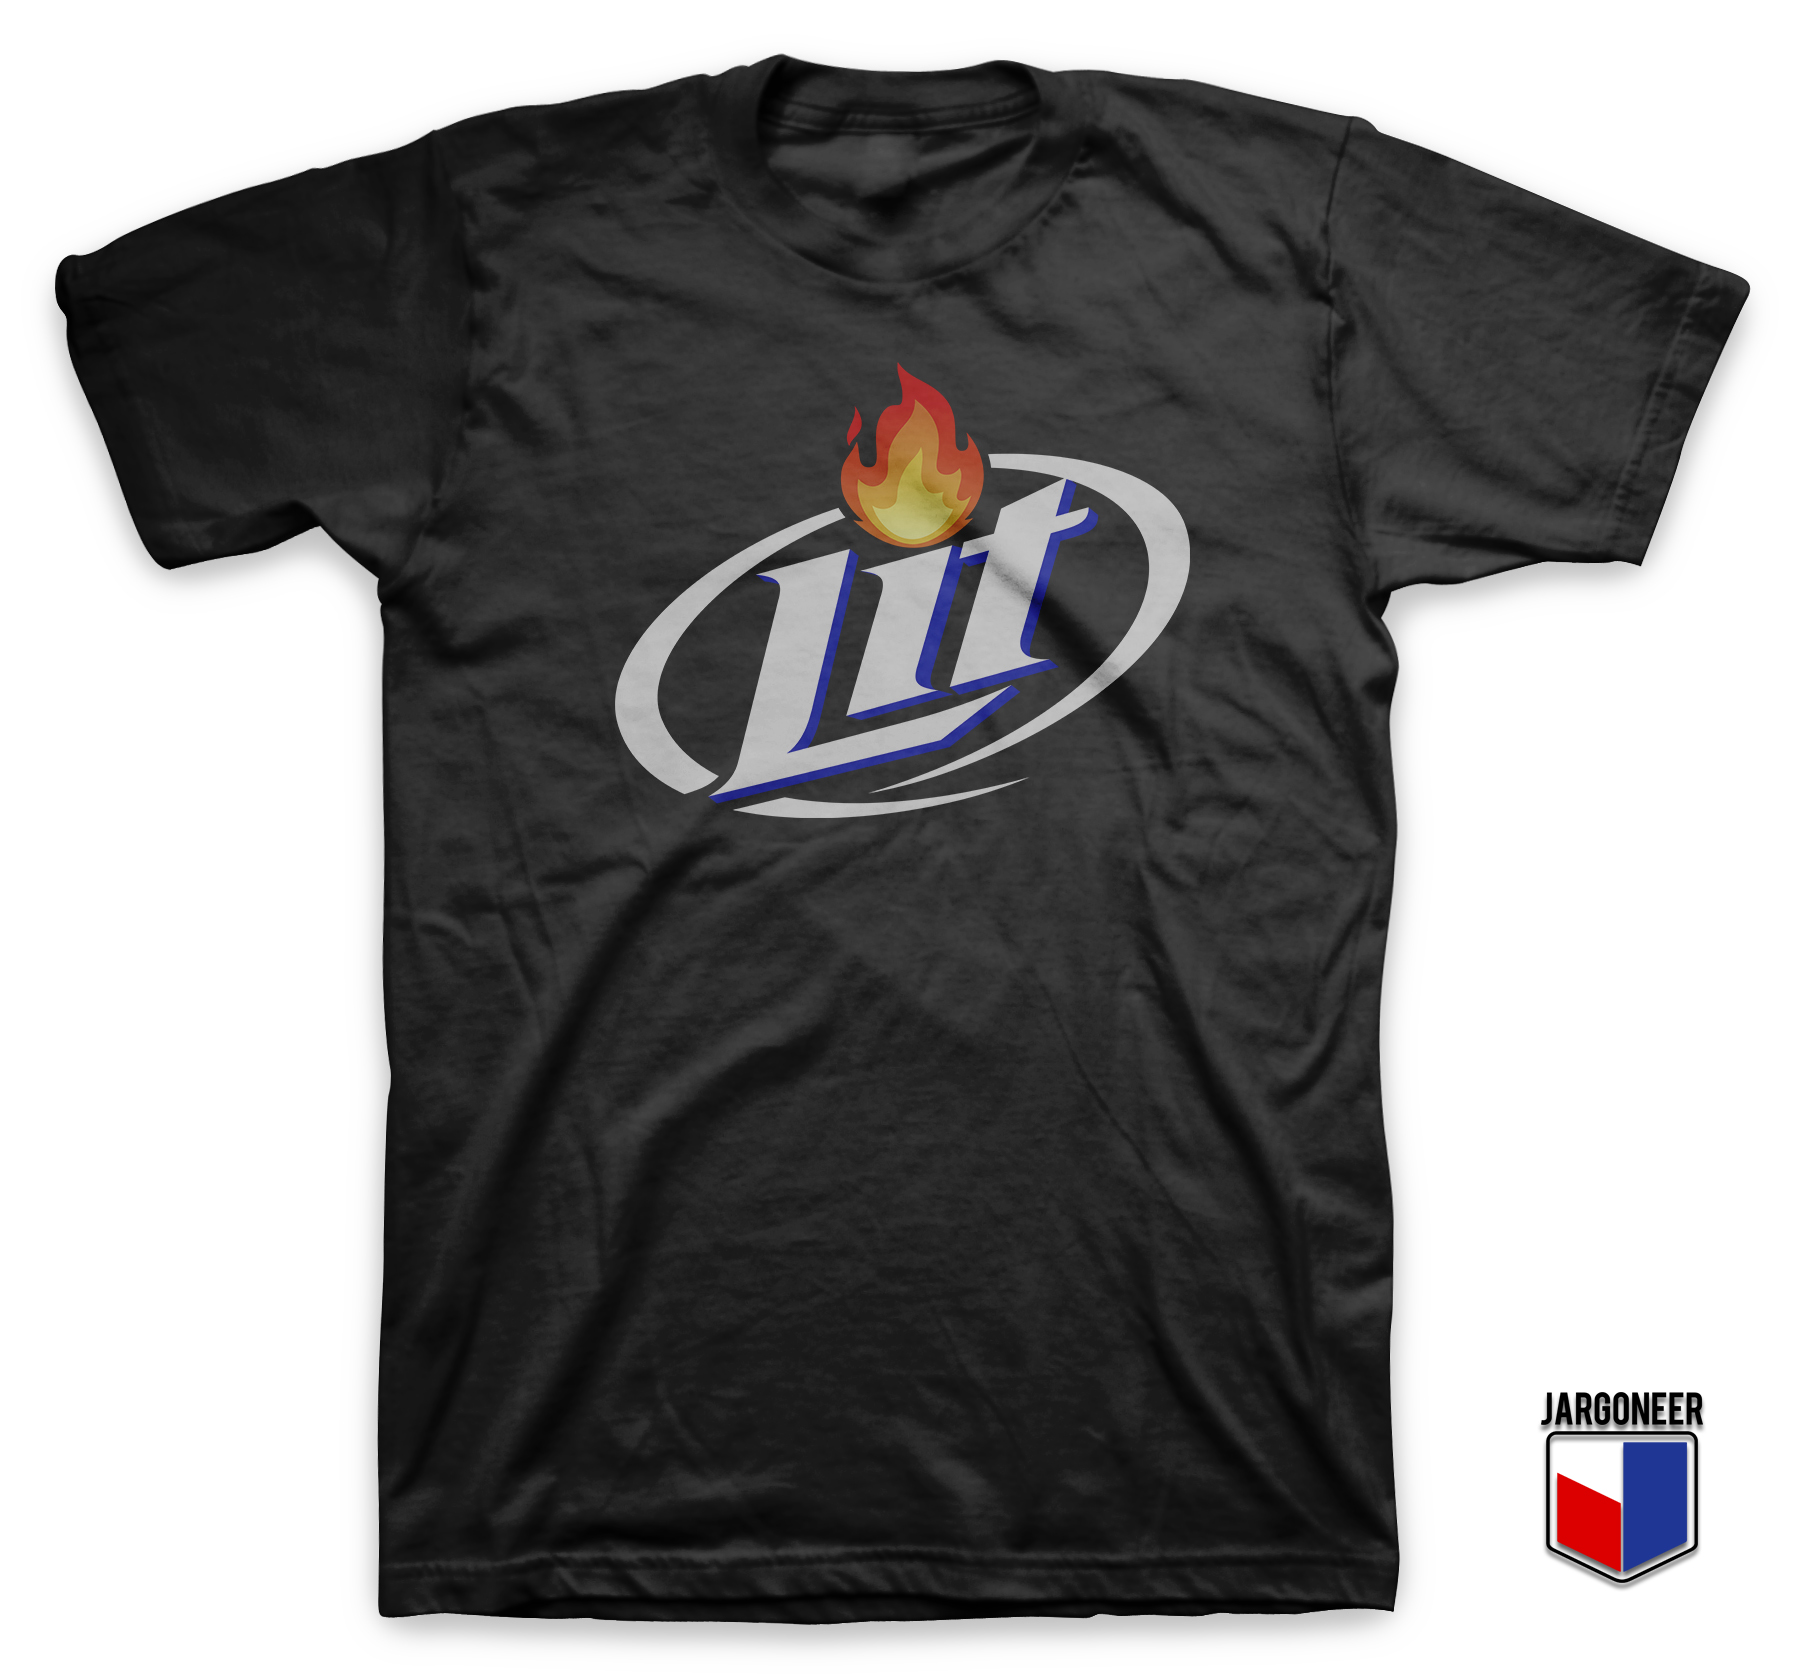 Lit The Lite Black T Shirt - Shop Unique Graphic Cool Shirt Designs